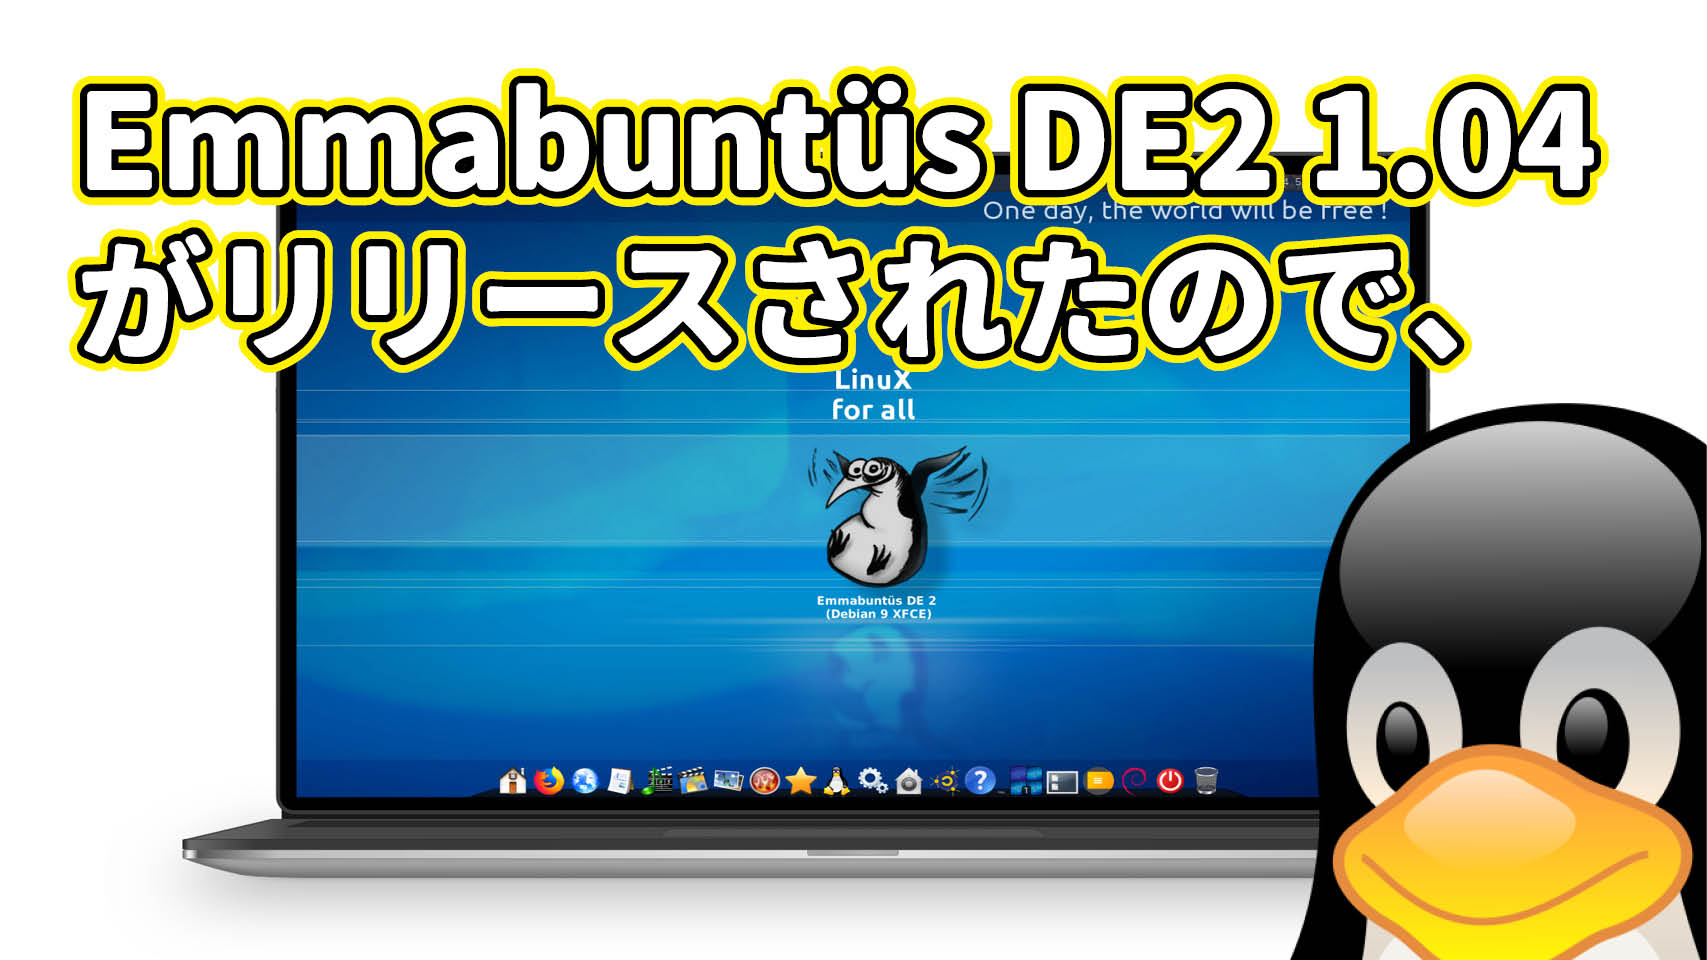 フランスで開発されている Ubuntu 系 Emmabuntüs DE2 1.04 がリリースされたので、